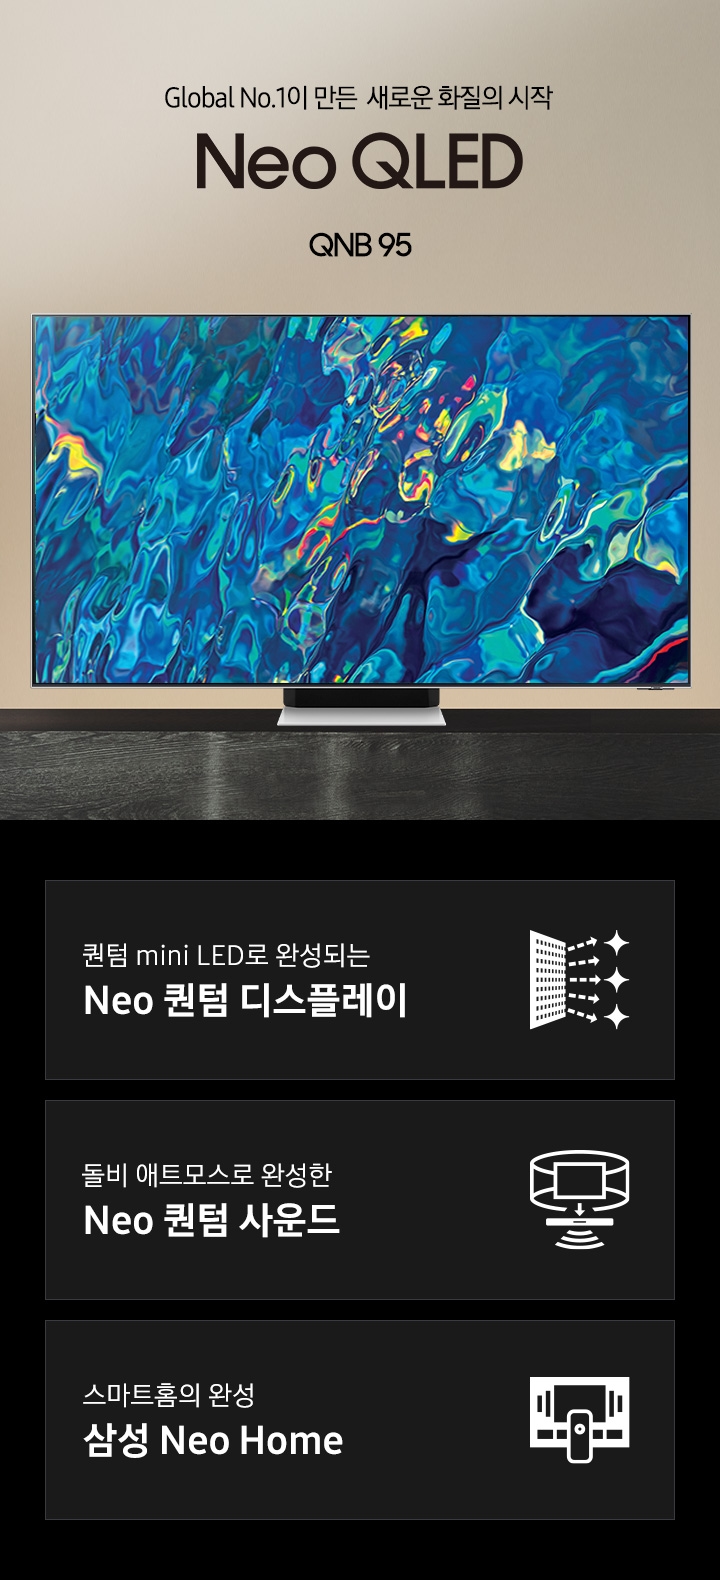 거실 서랍장 위에 TV가 놓여있습니다. Global No.1이 만든 새로운 화질의 시작 QNB95 KV 입니다. 화면에는 푸른색 파도 화면이 보입니다. 하단 3 POD 에는 퀀텀 mini LED로 완성되는 Neo 퀀텀 디스플레이 문구와 반짝이는 디스플레이 아이콘, 돌비 애트모스로 완성한 Neo 퀀텀 사운드 문구와 TV 아이콘에서 사운드 음파를 표현한 아이콘, 스마트홈의 완성 삼성 Neo Home 문구와 TV와 리모컨, TV 속 컨텐츠들을 표현한 아이콘이 있습니다. 